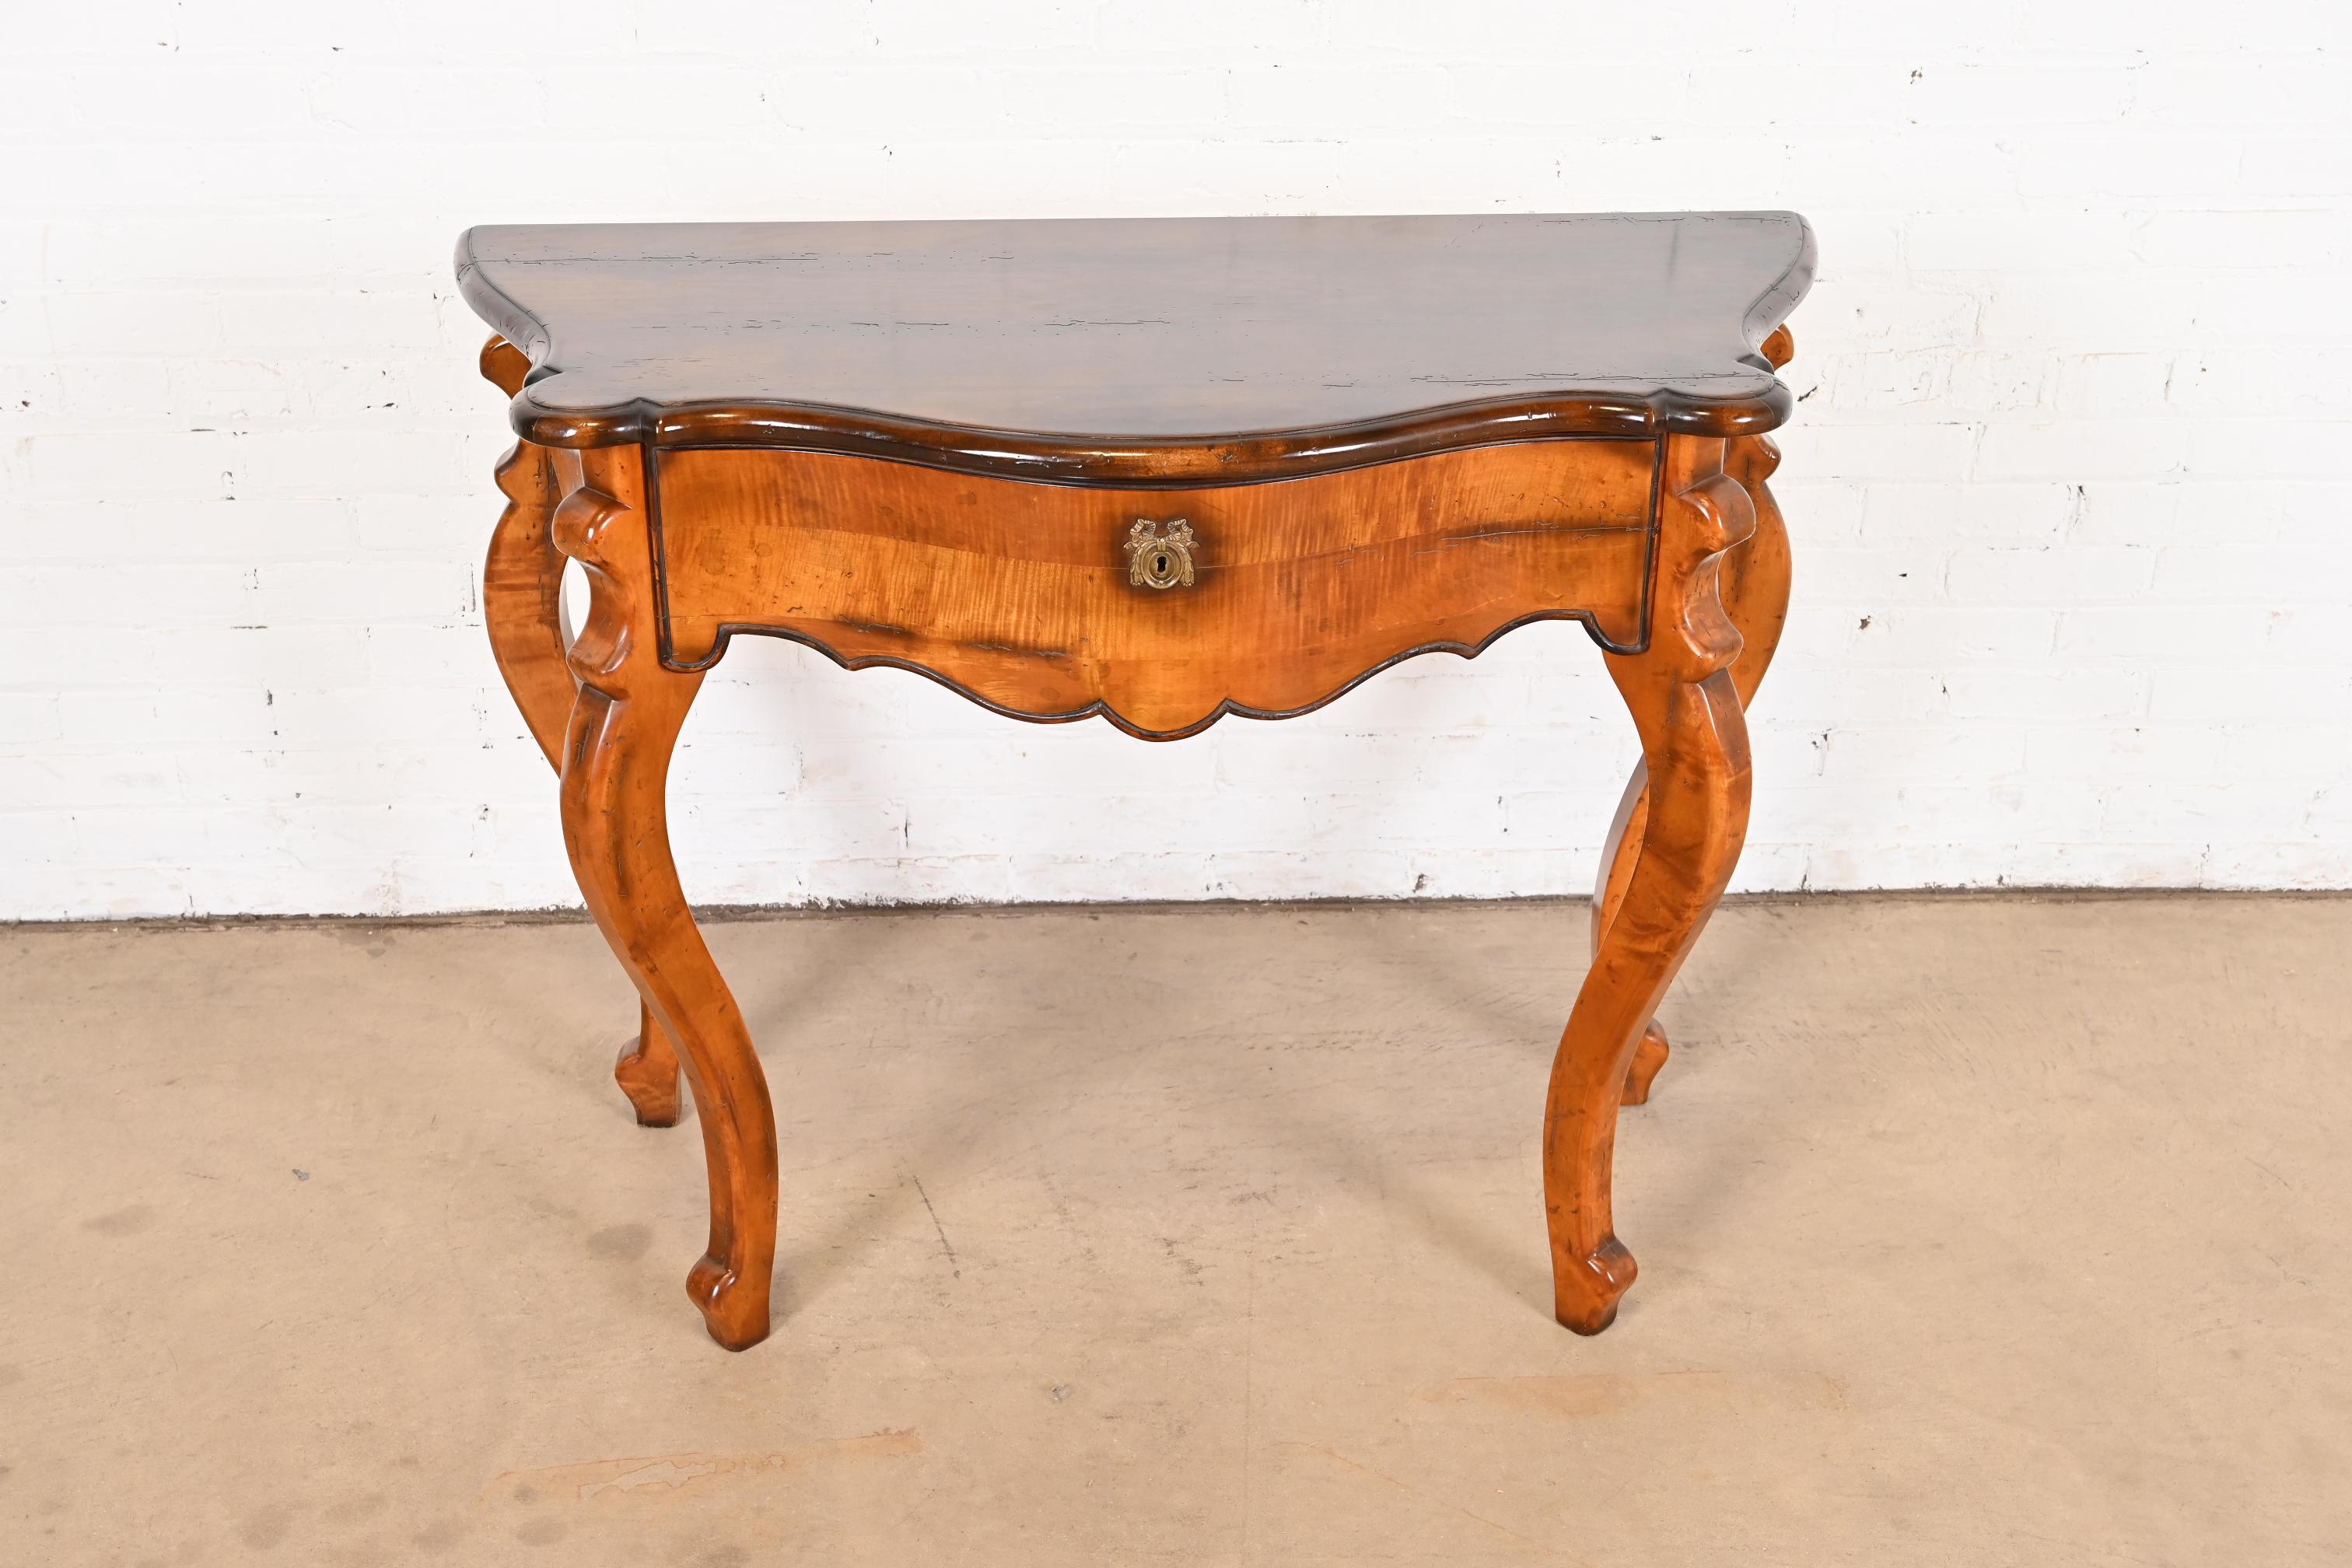 Magnifique table console ou table d'entrée de style provincial italien Louis XV

Par Baker Furniture, Collection 